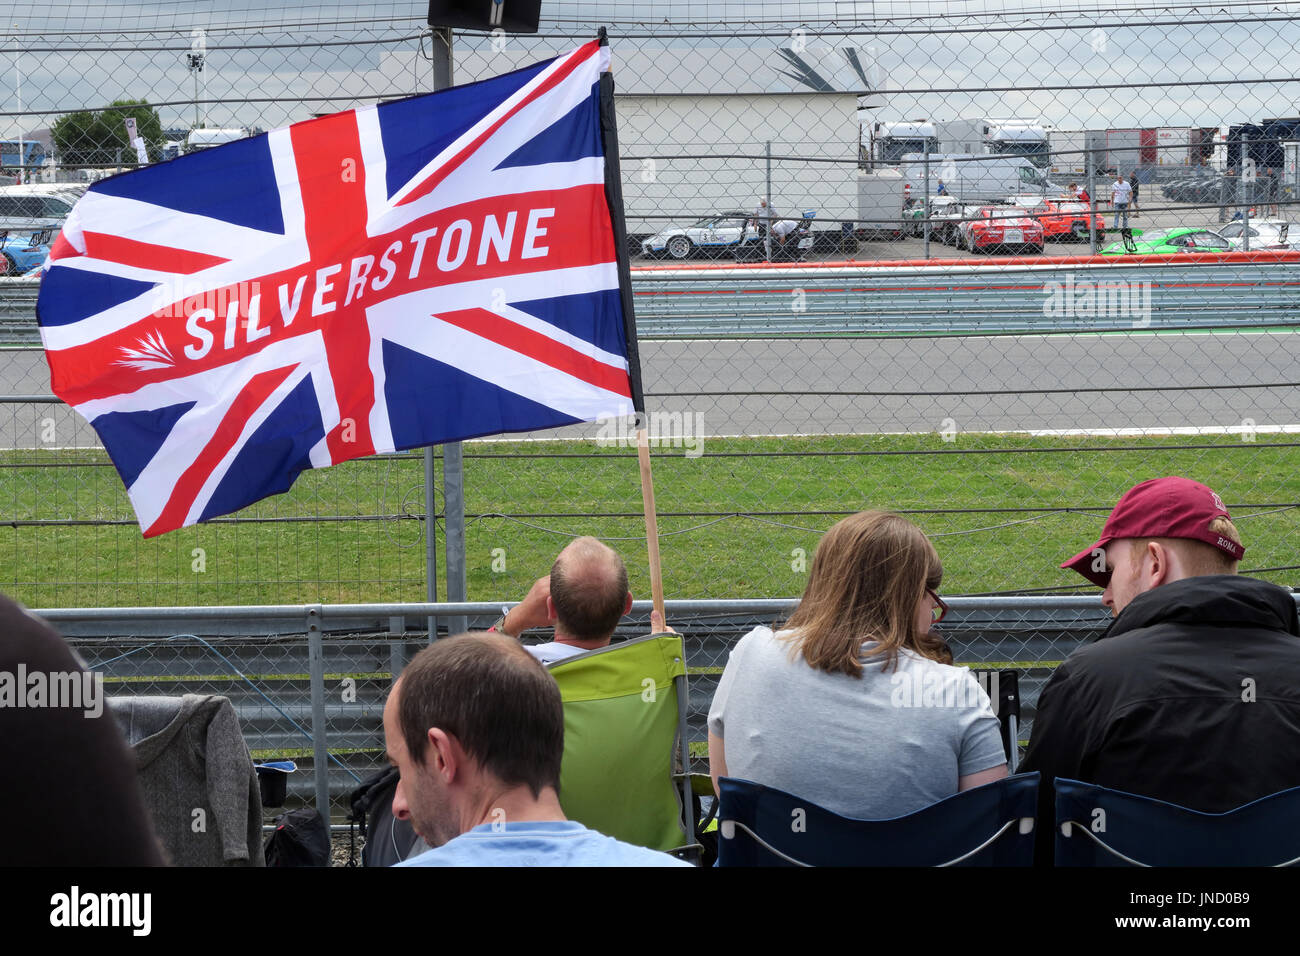 Bandiera di Silverstone, al circuito automobilistico Formula1, Gran Premio di Formula uno britannico, Northampton , Inghilterra, Regno Unito Foto Stock